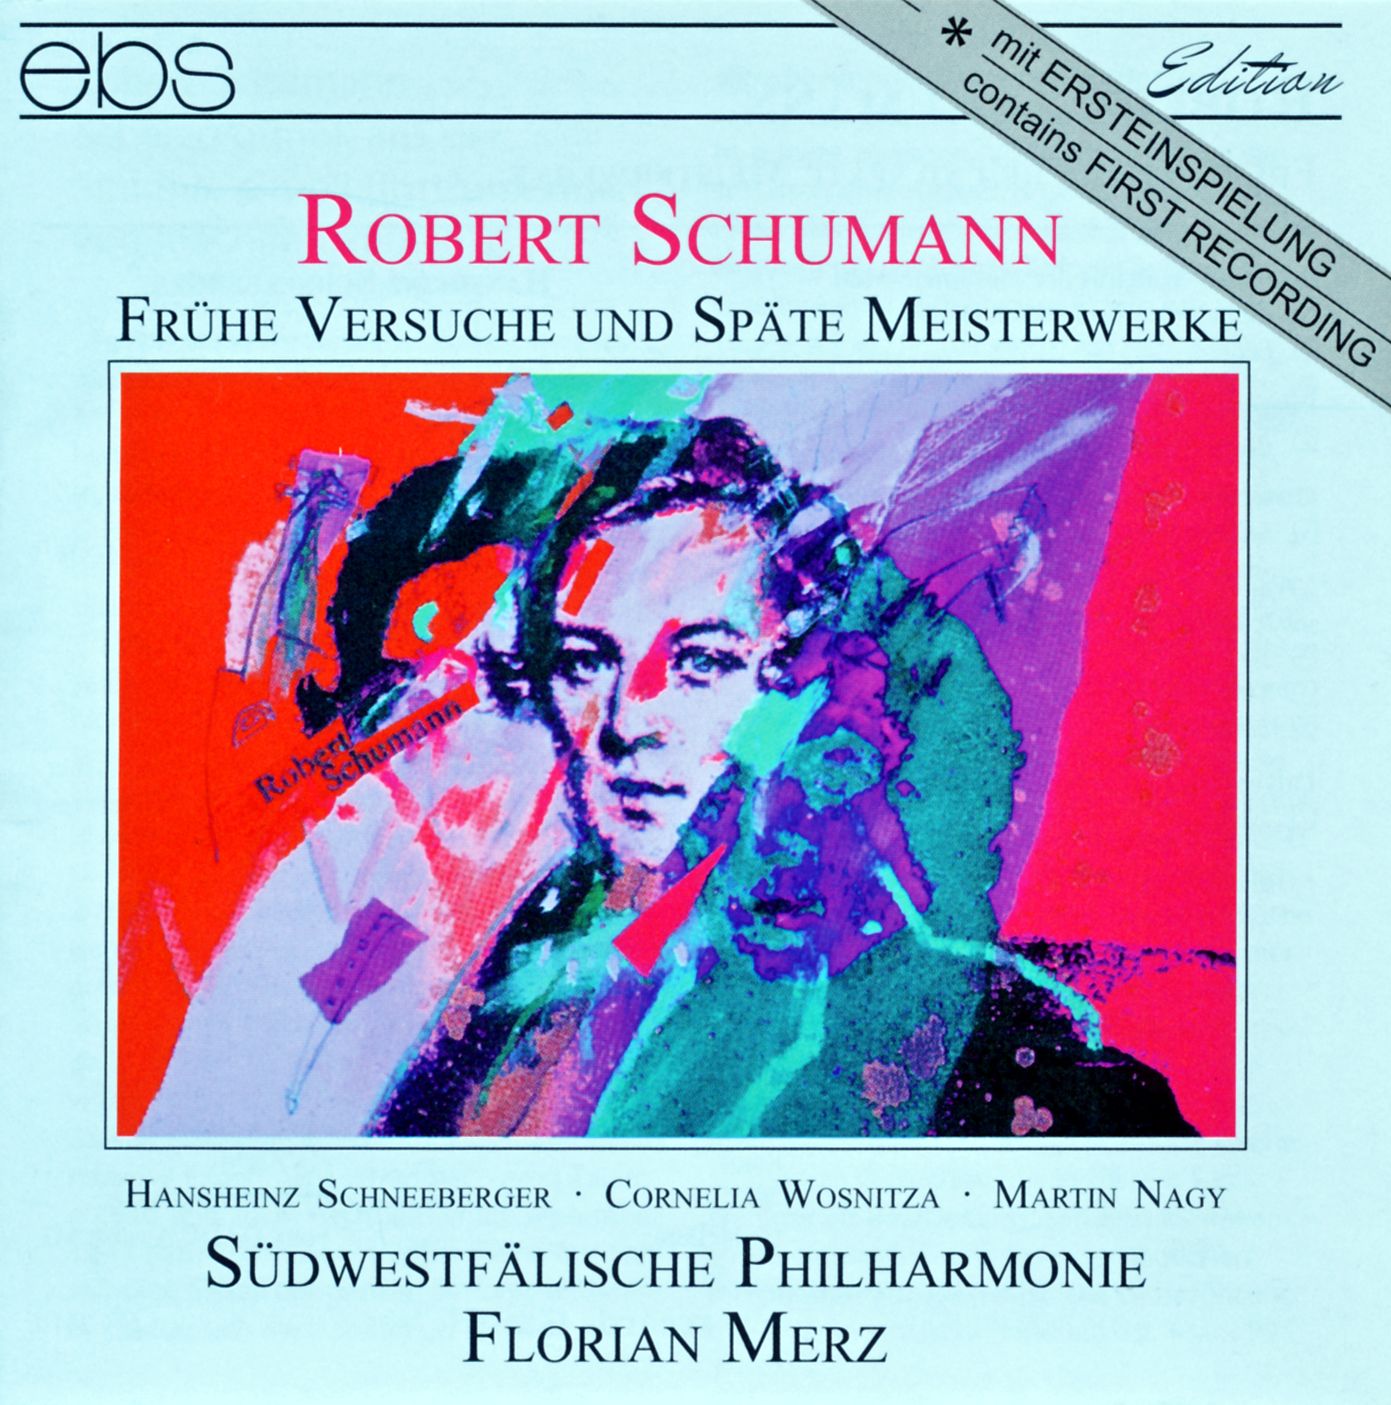 Robert Schumann - Frühe Versuche und späte Meisterwerke